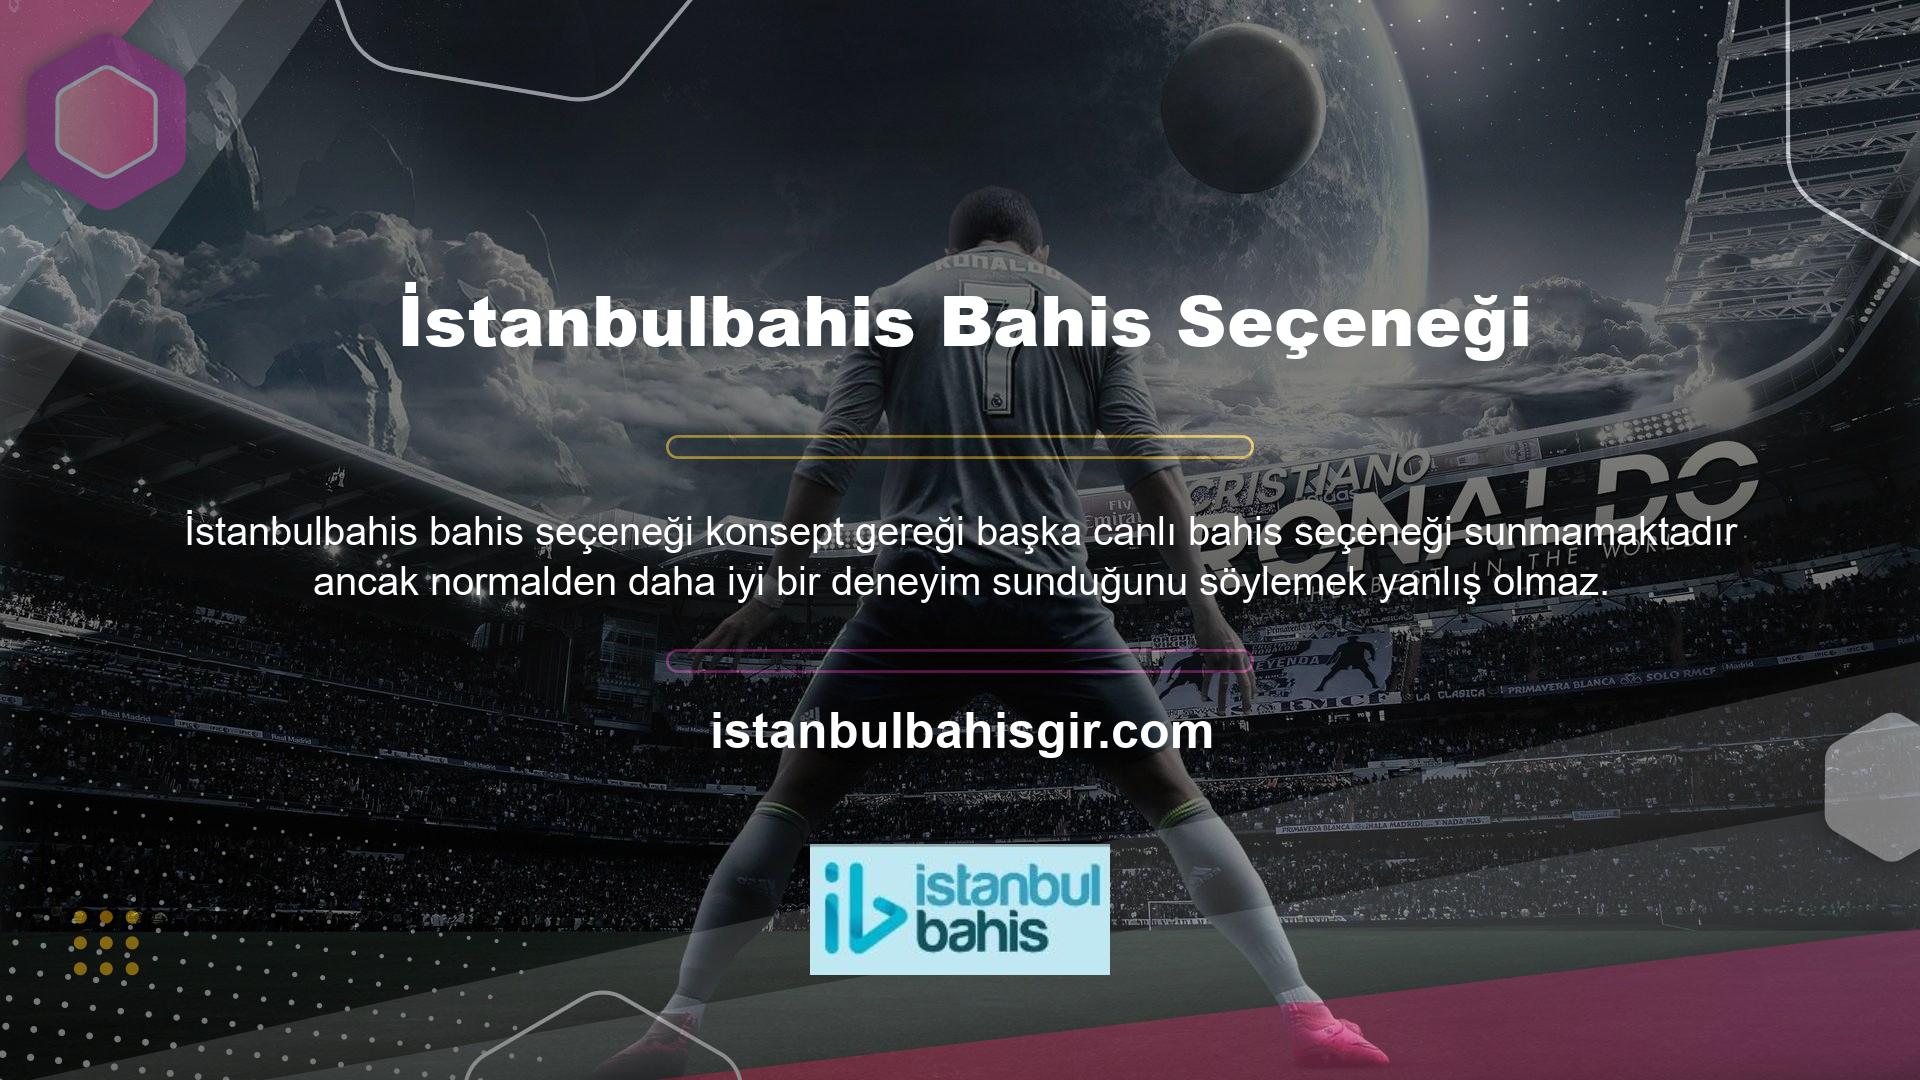 İstanbulbahis canlı bahis sitesi bahisçilere bedava bonus fırsatları sunmaktadır